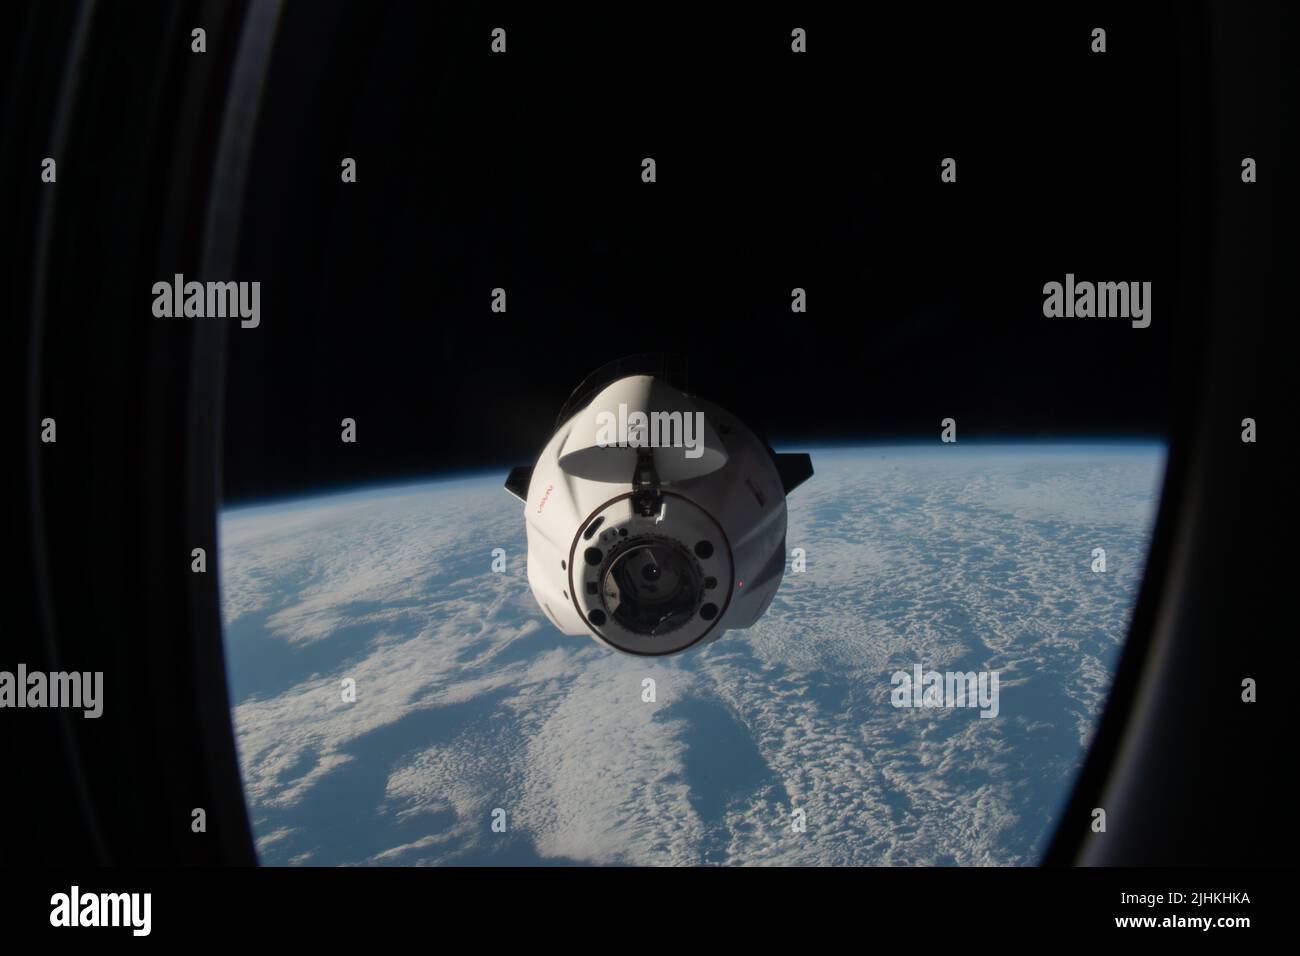 Il veicolo spaziale senza equipaggio SpaceX Dragon rifornisce, si avvicina alla Stazione spaziale Internazionale per l'aggancio con il modulo Harmony Forward Port, 16 luglio 2022 a Earth Orbit. La nave da carico trasporta oltre 5.800 libbre di esperimenti scientifici, cibo fresco e forniture di equipaggio per i sette membri dell'equipaggio della Expedition 67. Foto Stock